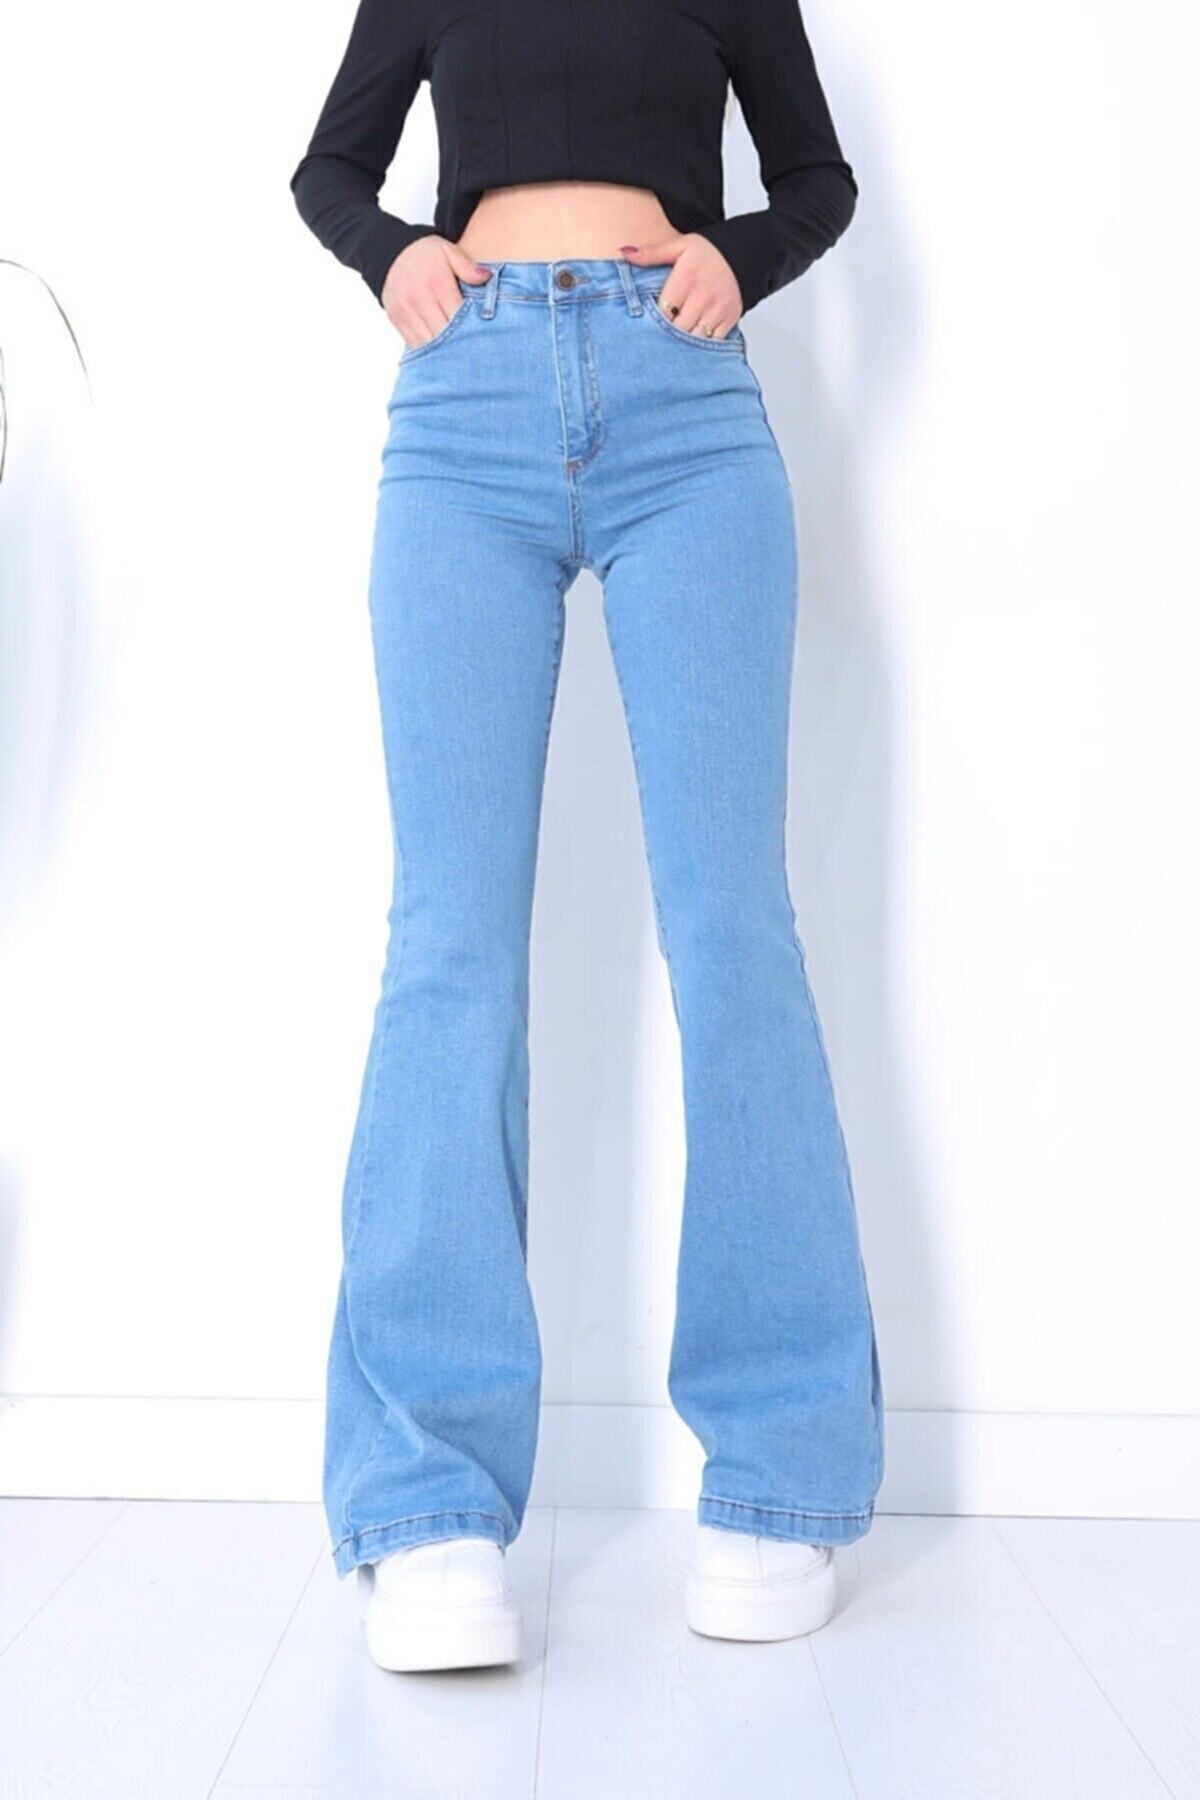 TRENDNATUREL Ispanyol Renk Solmaz Likralı Yüksek Bel Açık Mavi Ispanyol Jeans Pantalon